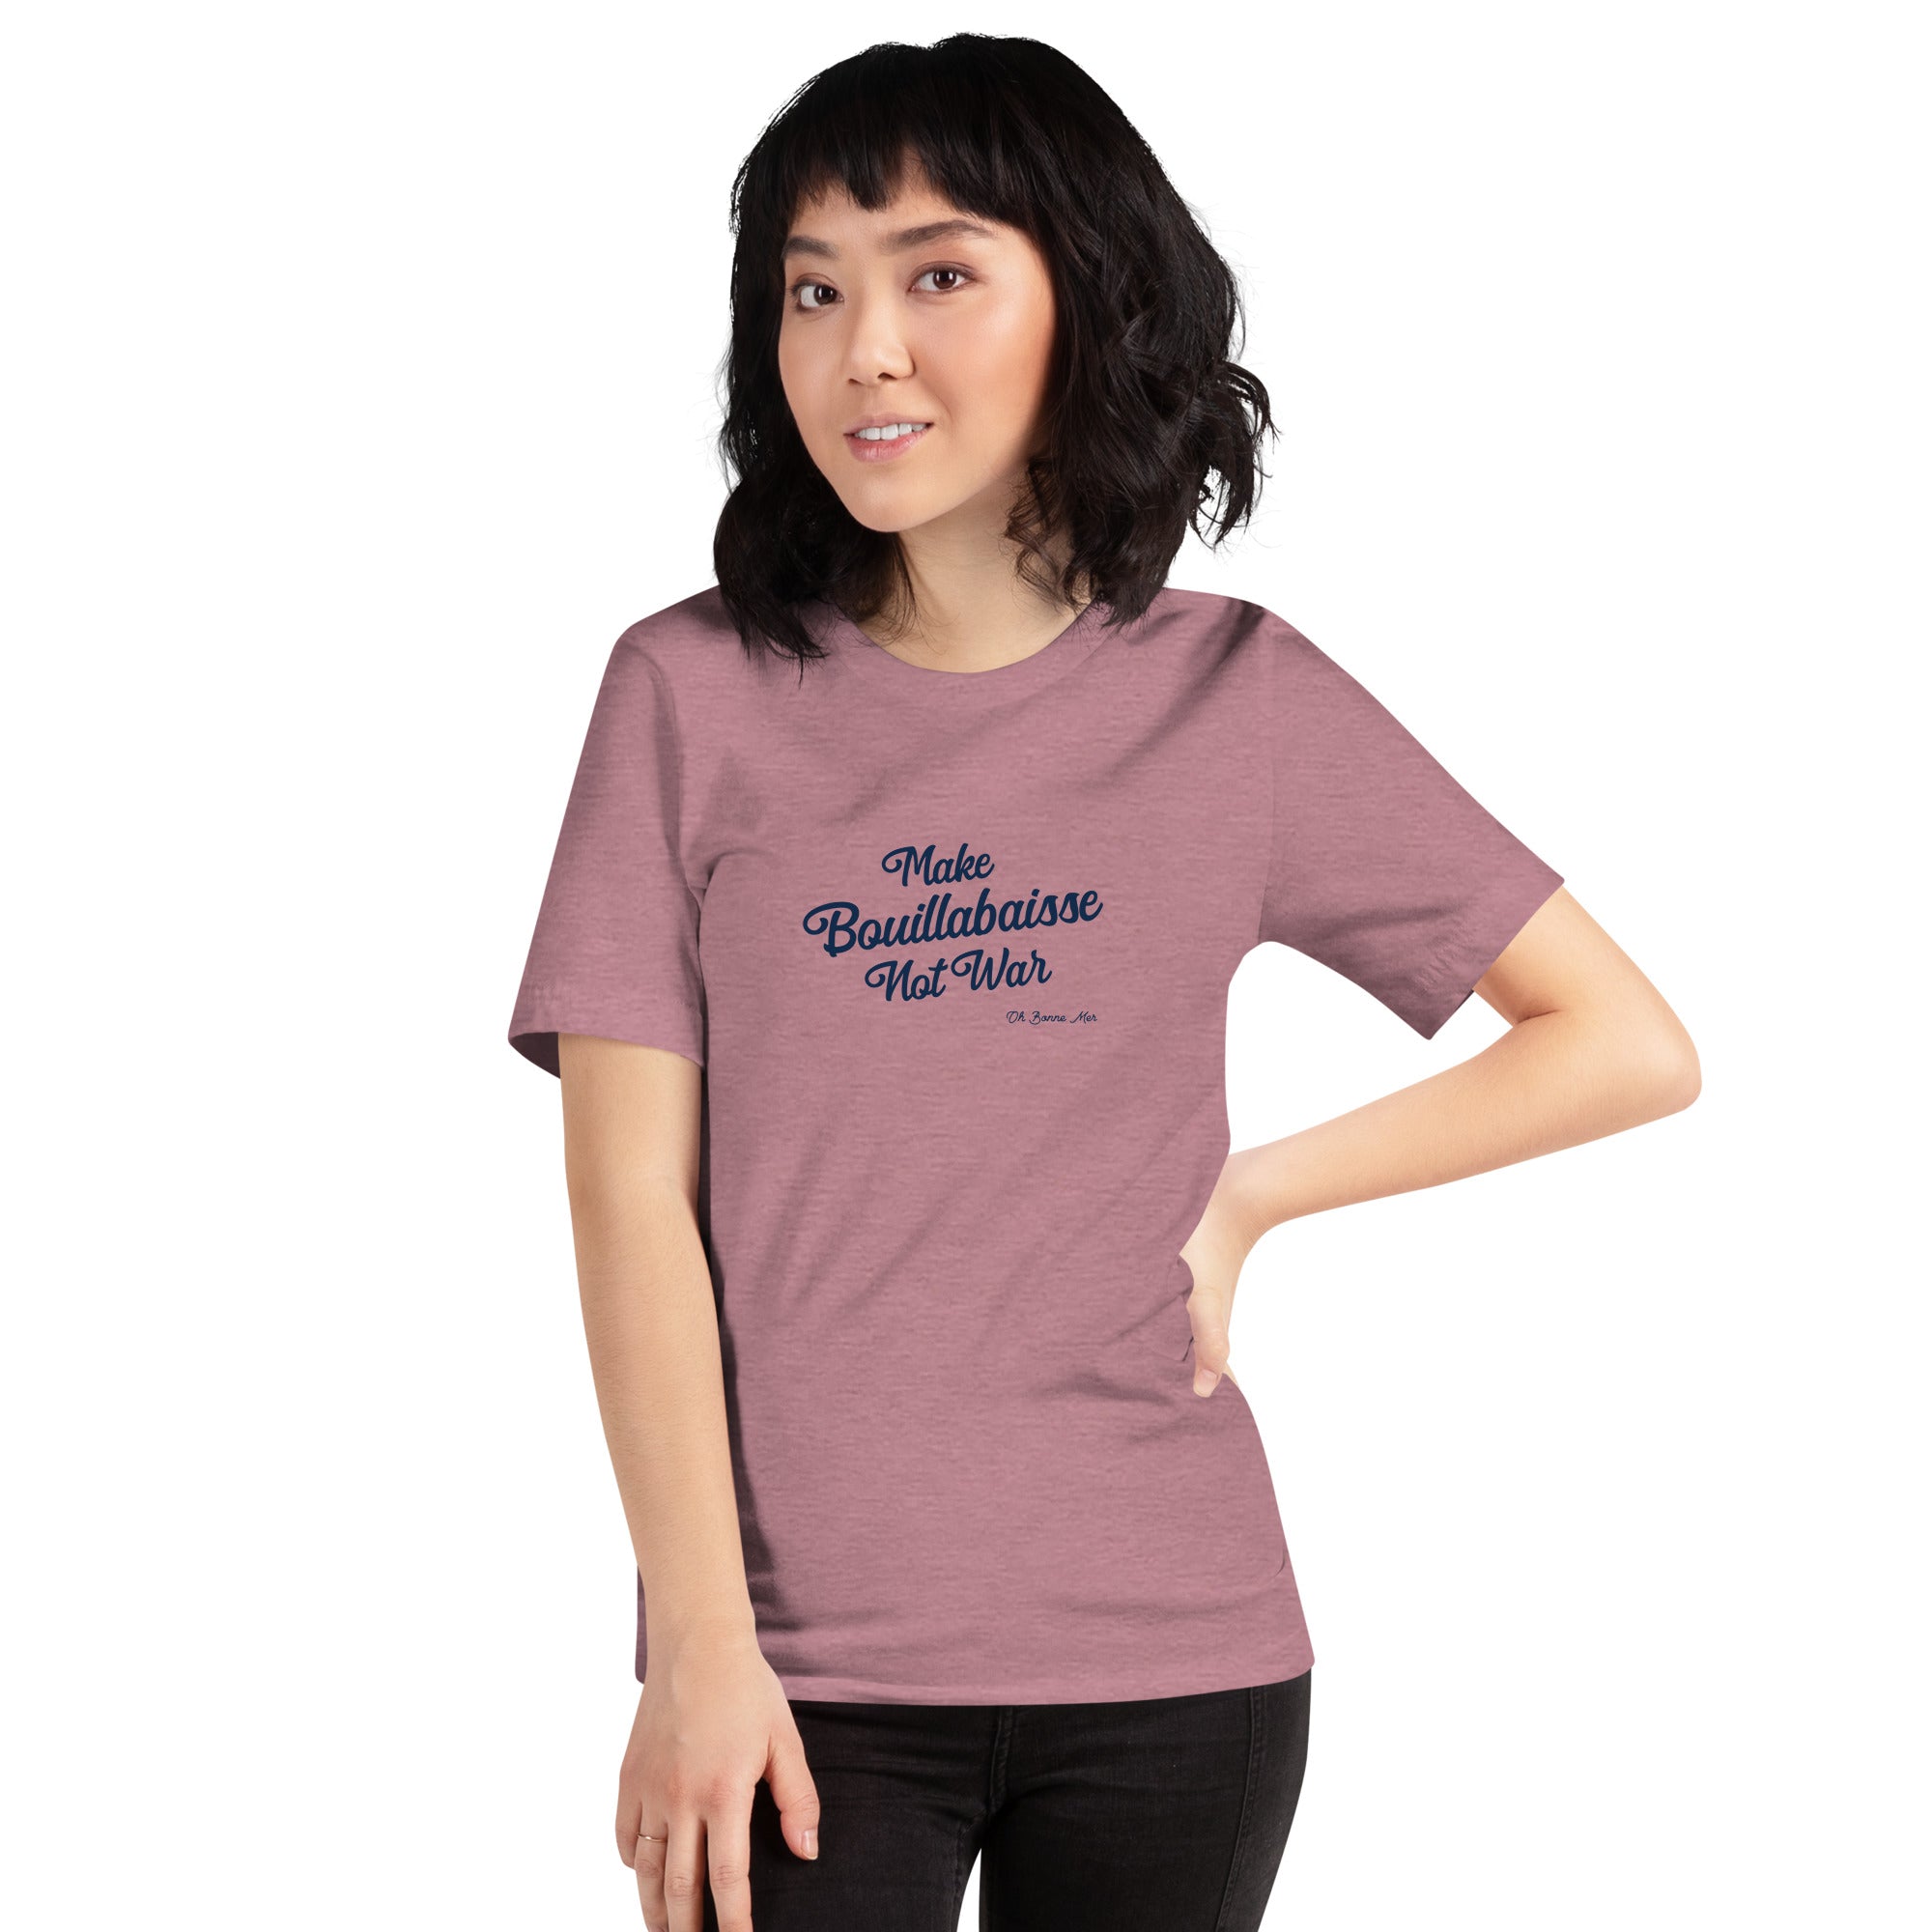 T-shirt en coton unisexe Make Bouillabaisse Not War Text Only sur couleurs chinées vives